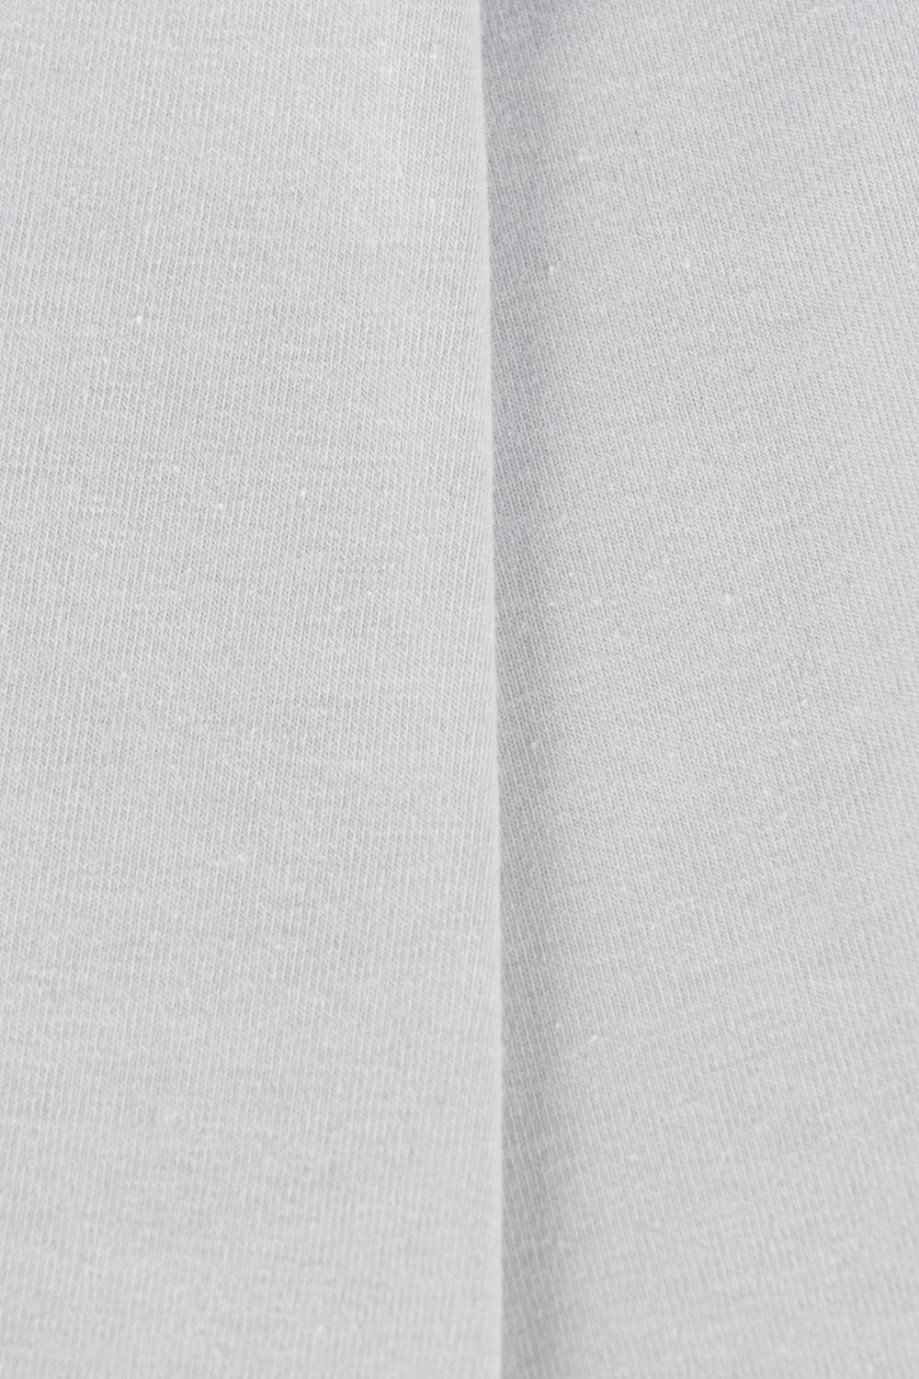 Bóxer gris medio tipo brief con elástico contramarcado en contraste